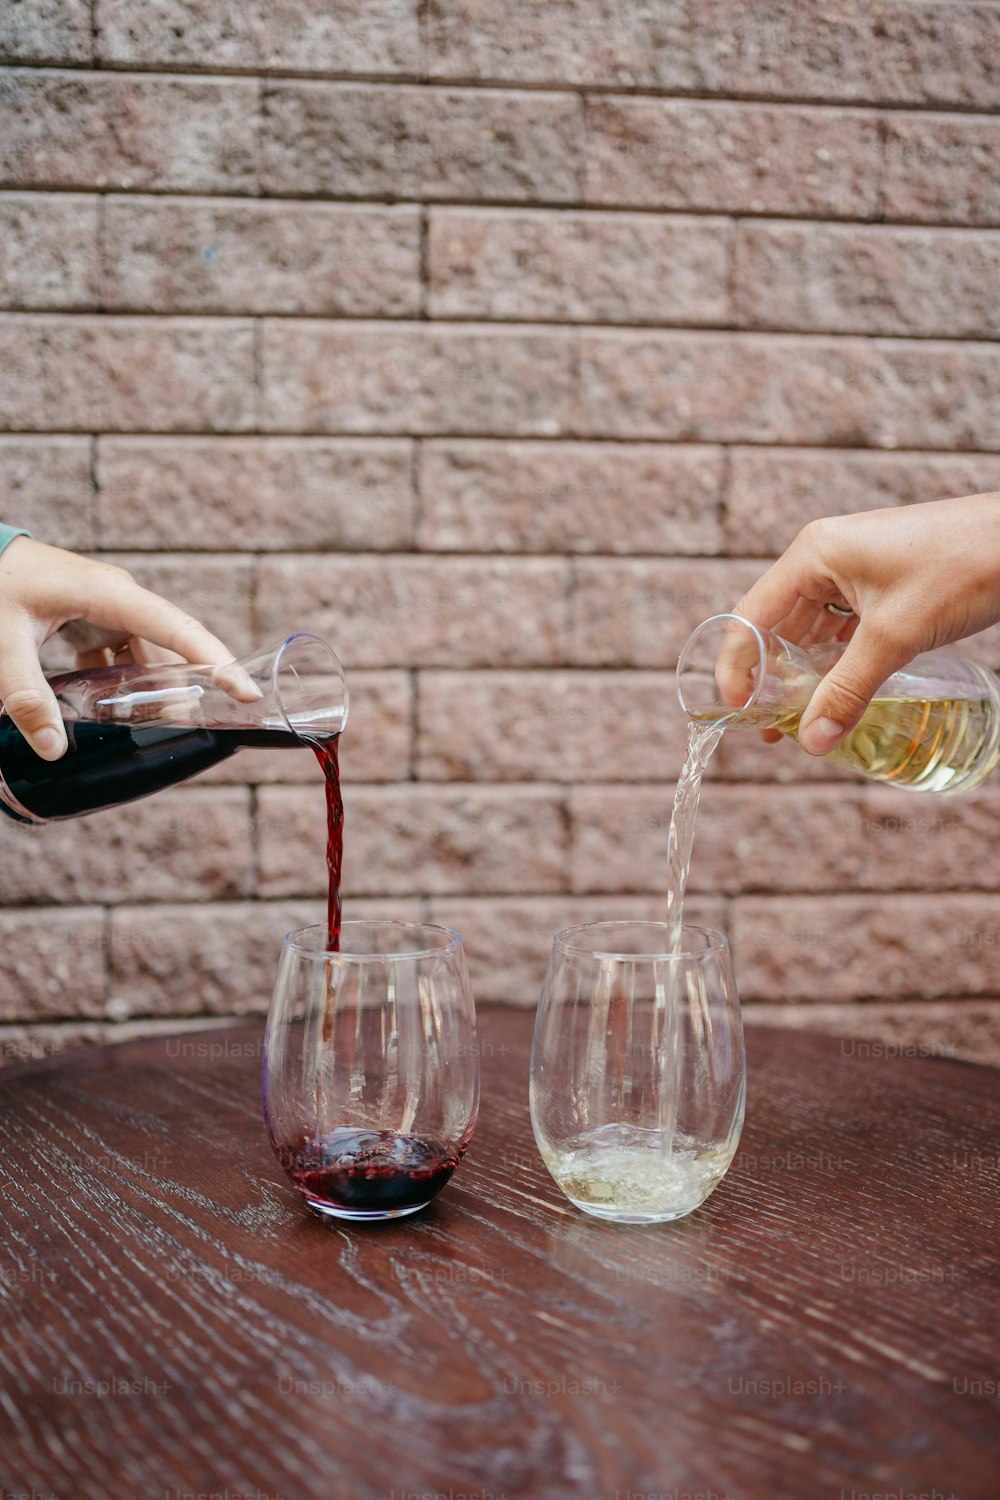 テーブルの上のワイングラスにワインを�注ぐ人